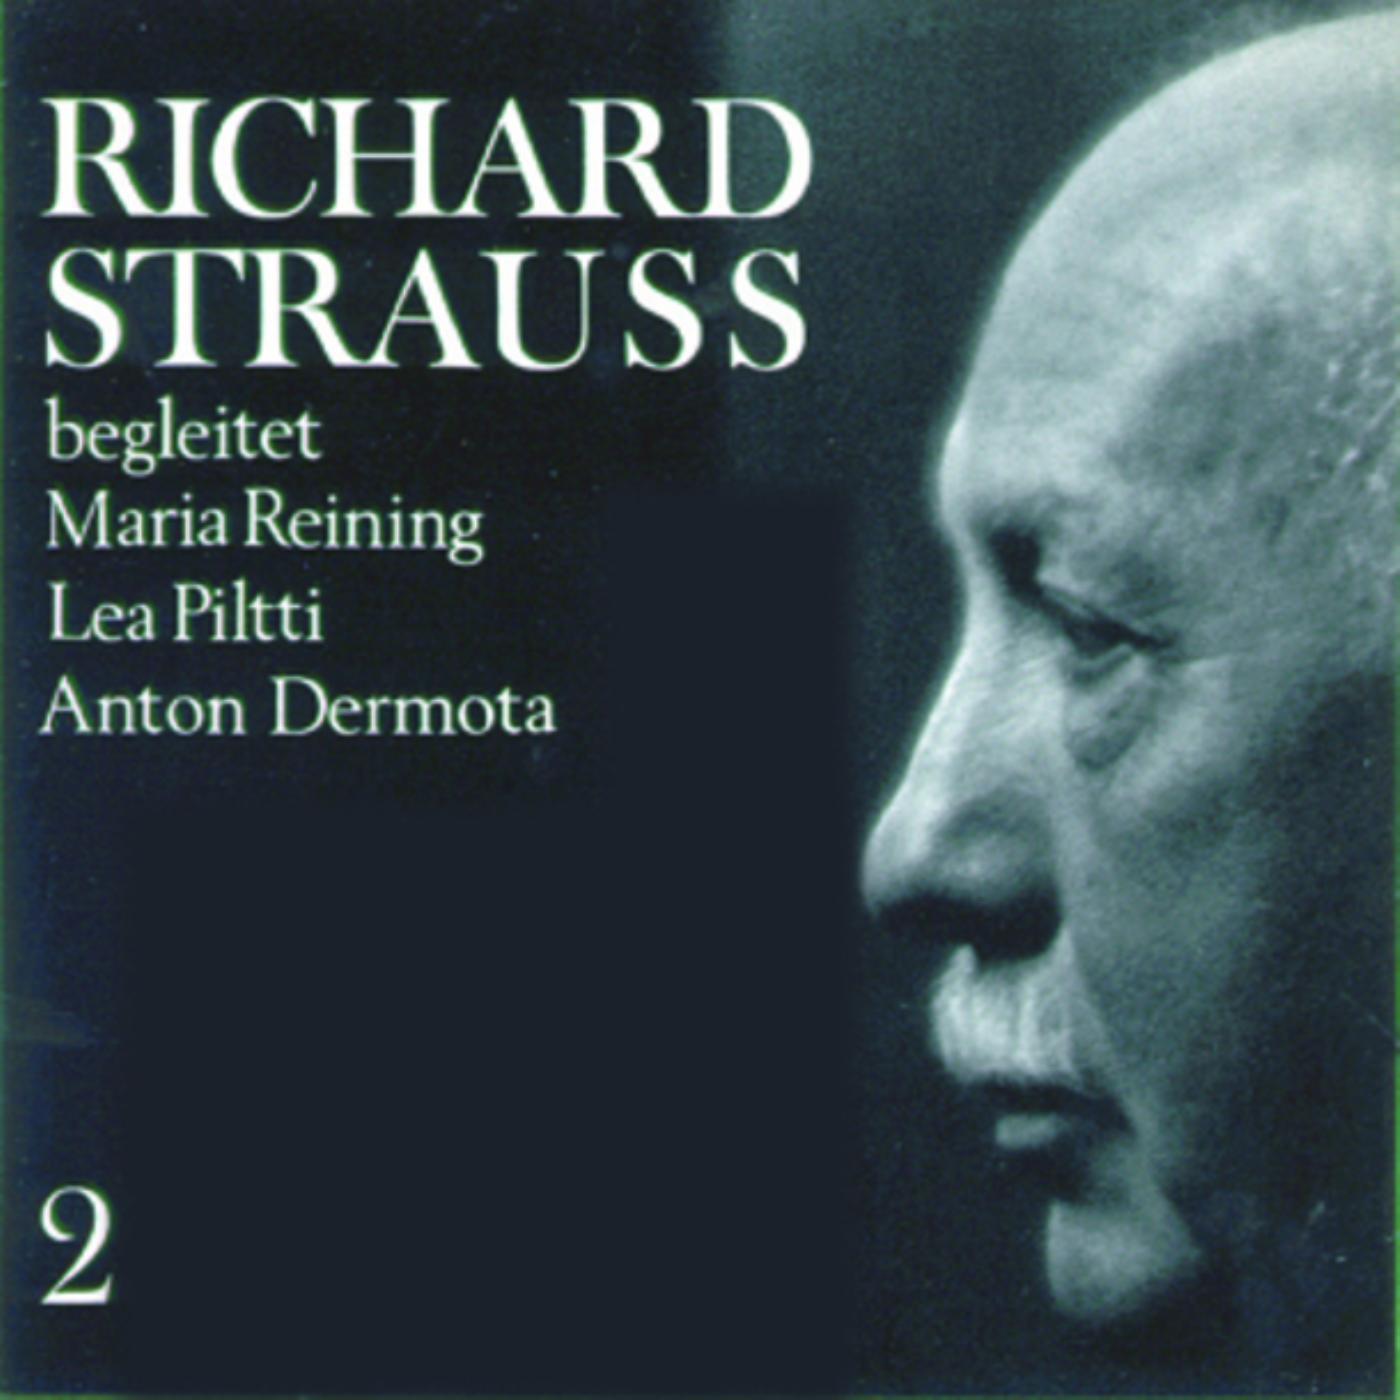 Richard Strauss begleitet (Vol.2)